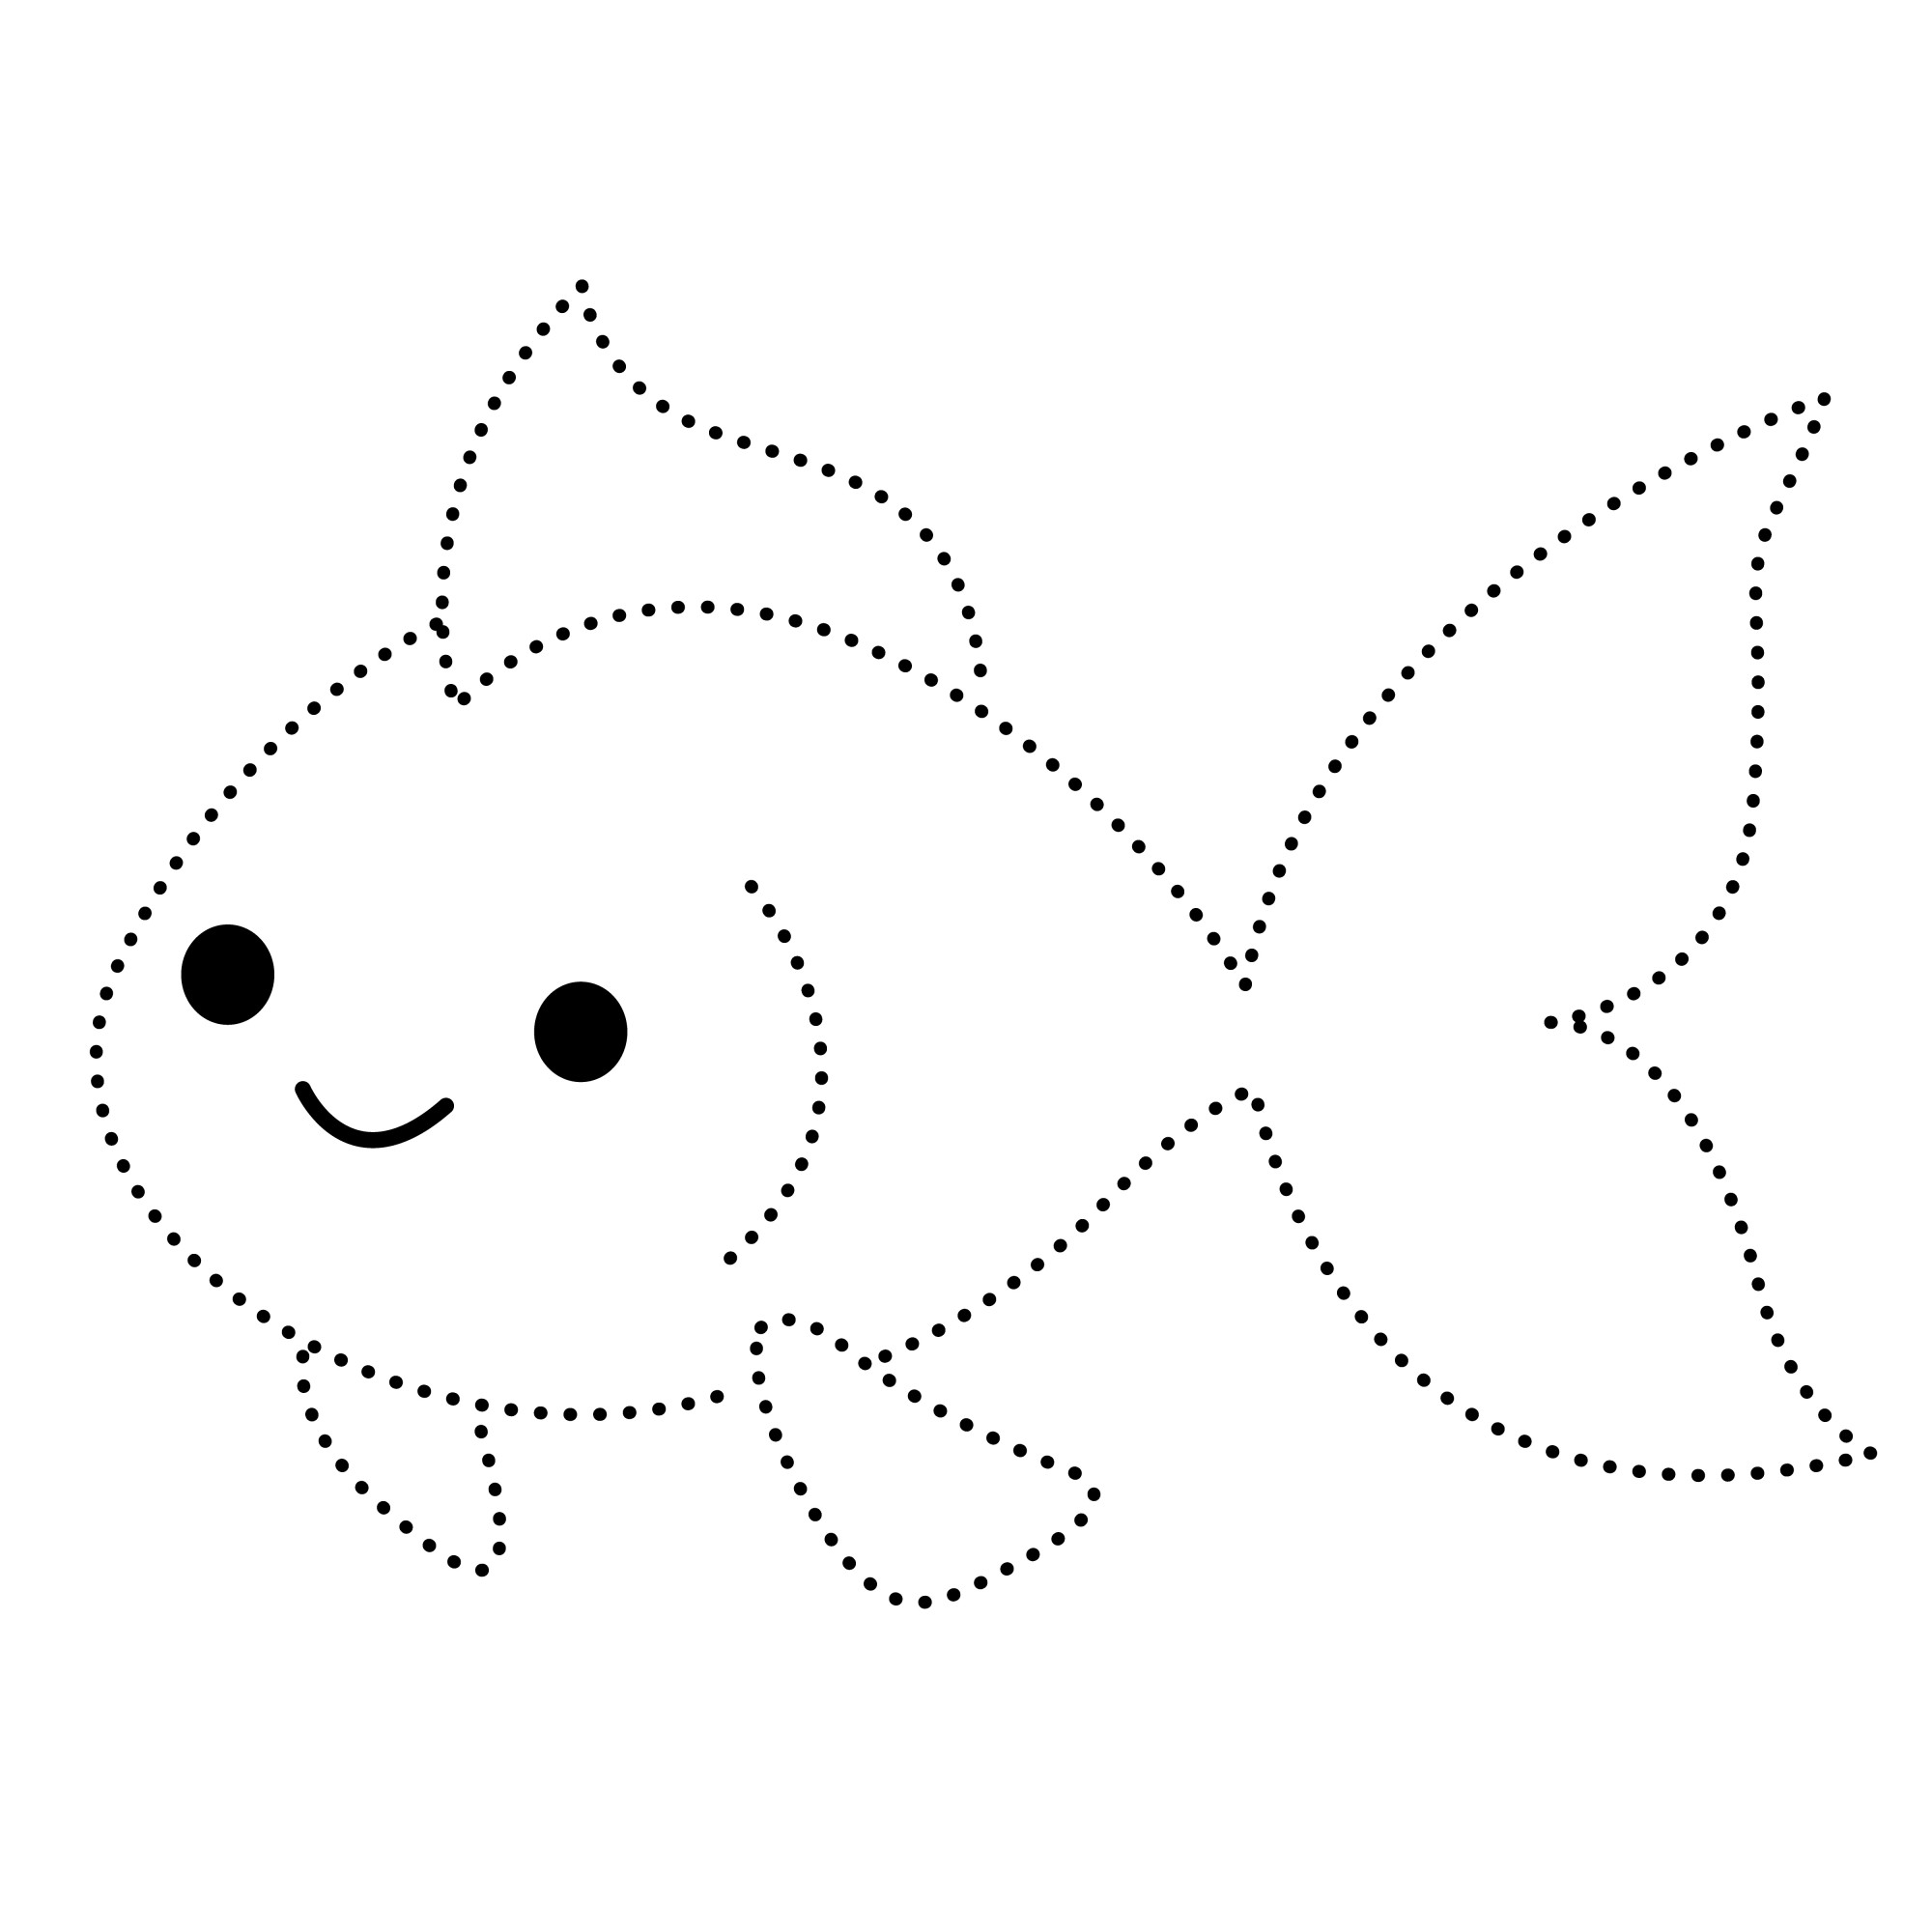 Раскраска для детей: милая рыбка по точкам